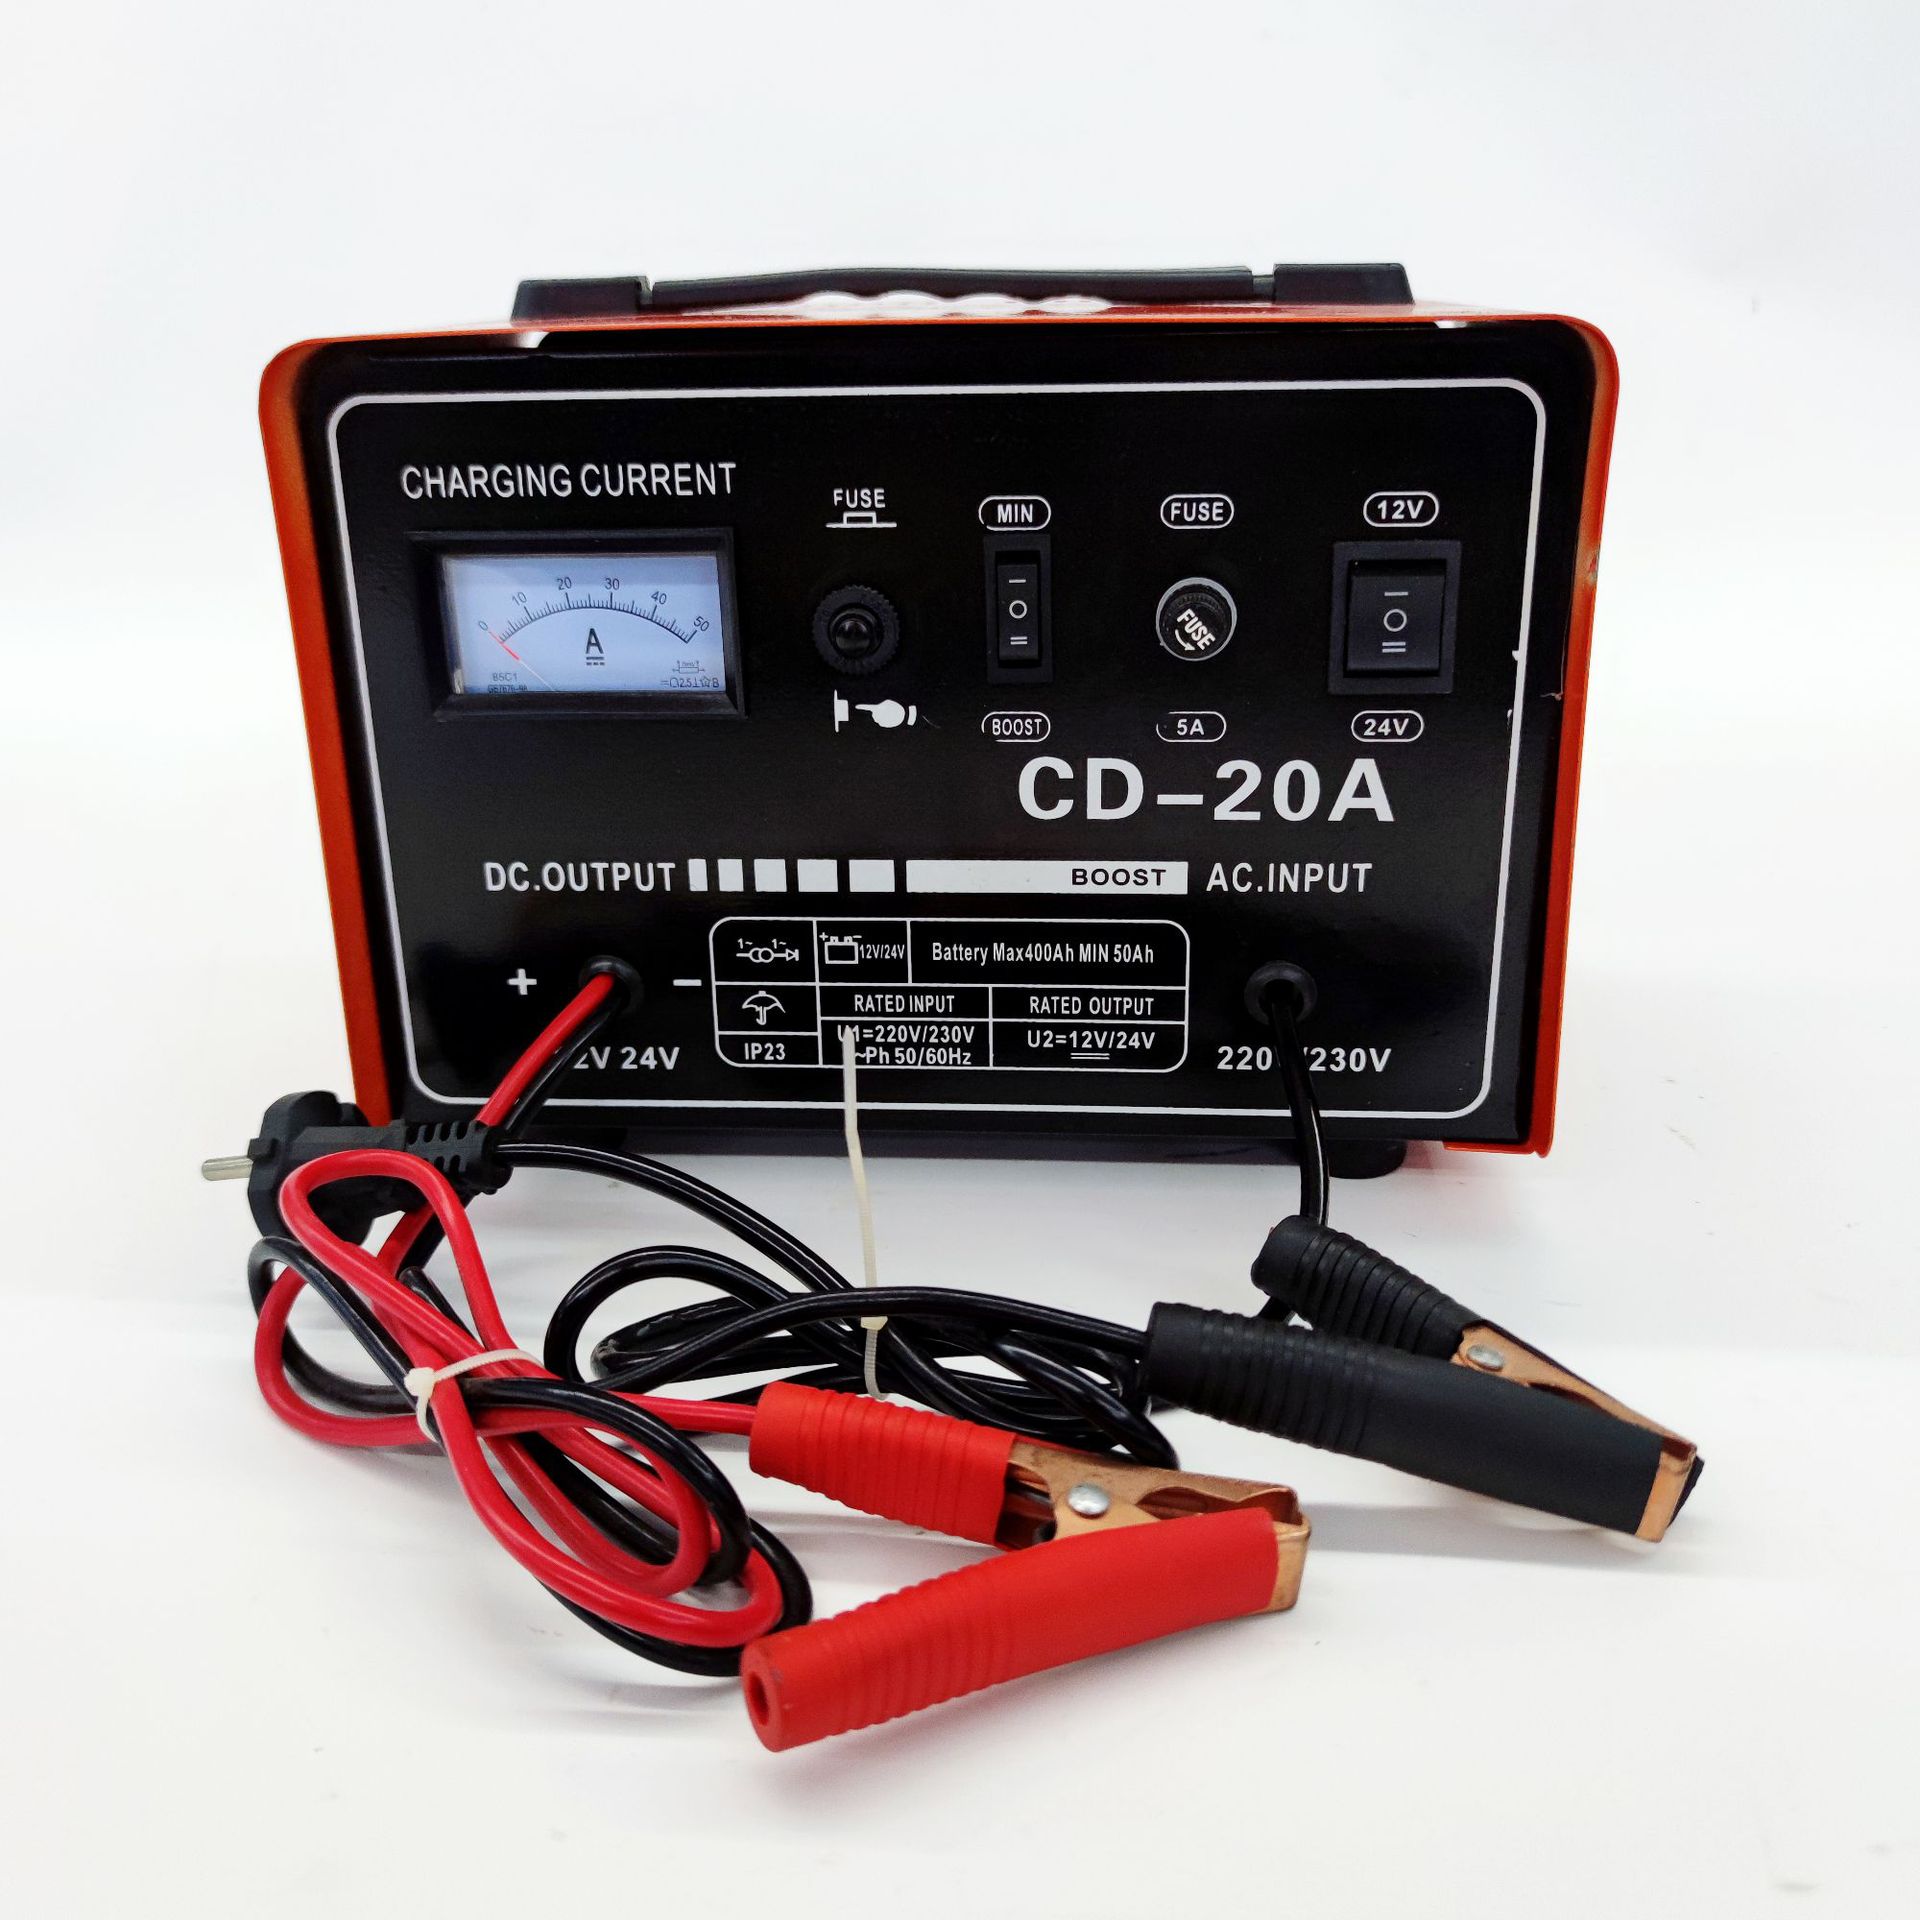 CD-20A/汽车电瓶充电/电源充电器产品图